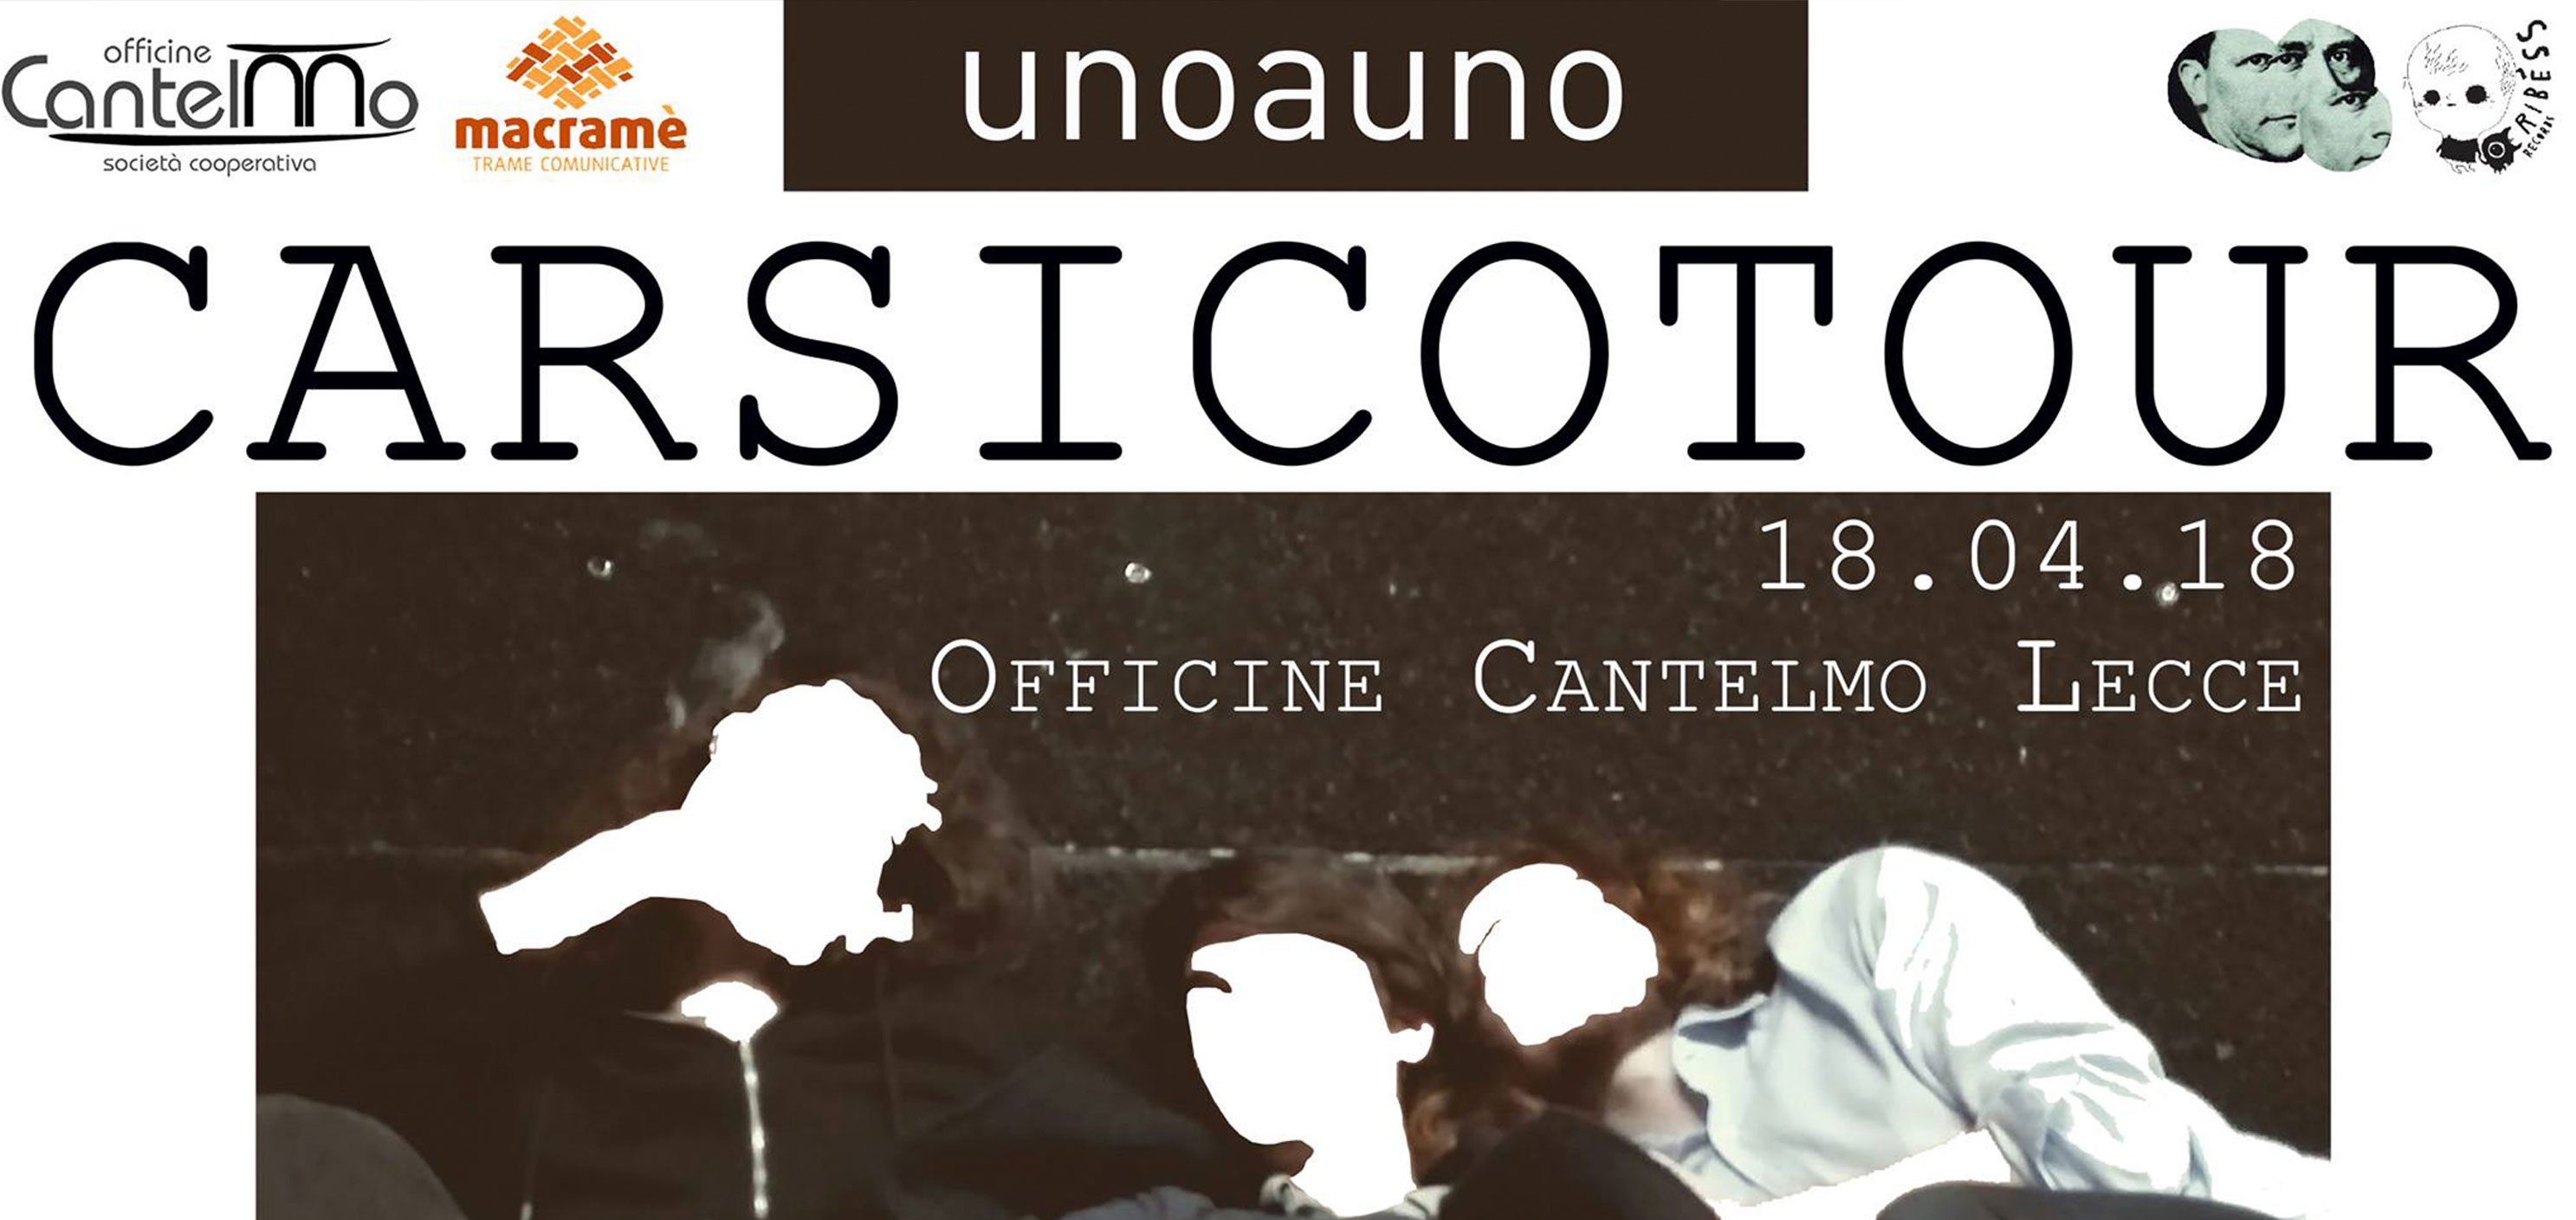 Unoauno - Carsicotour - Lecce